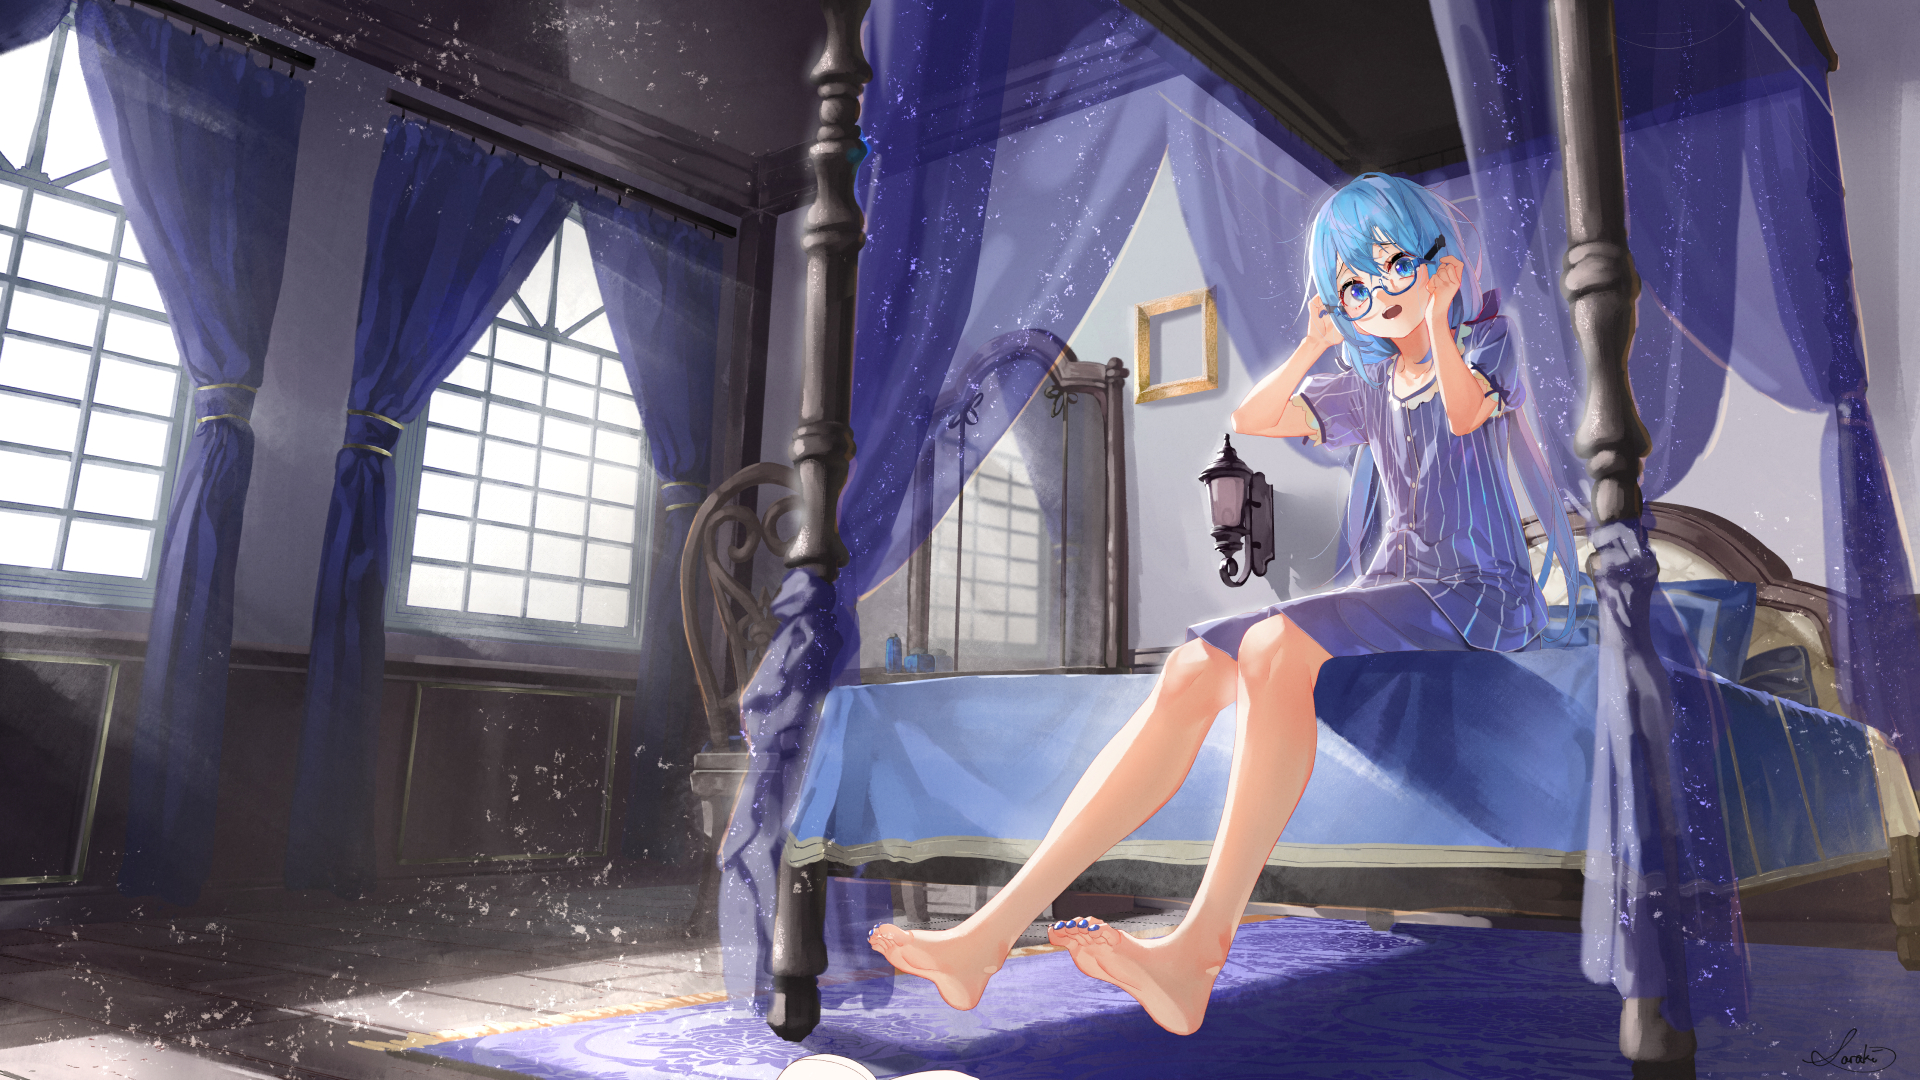 Anime 1920x1080 anime anime girls digital art artwork 2D portrait Saraki room bed feet glasses blue eyes blue hair long hair barefoot